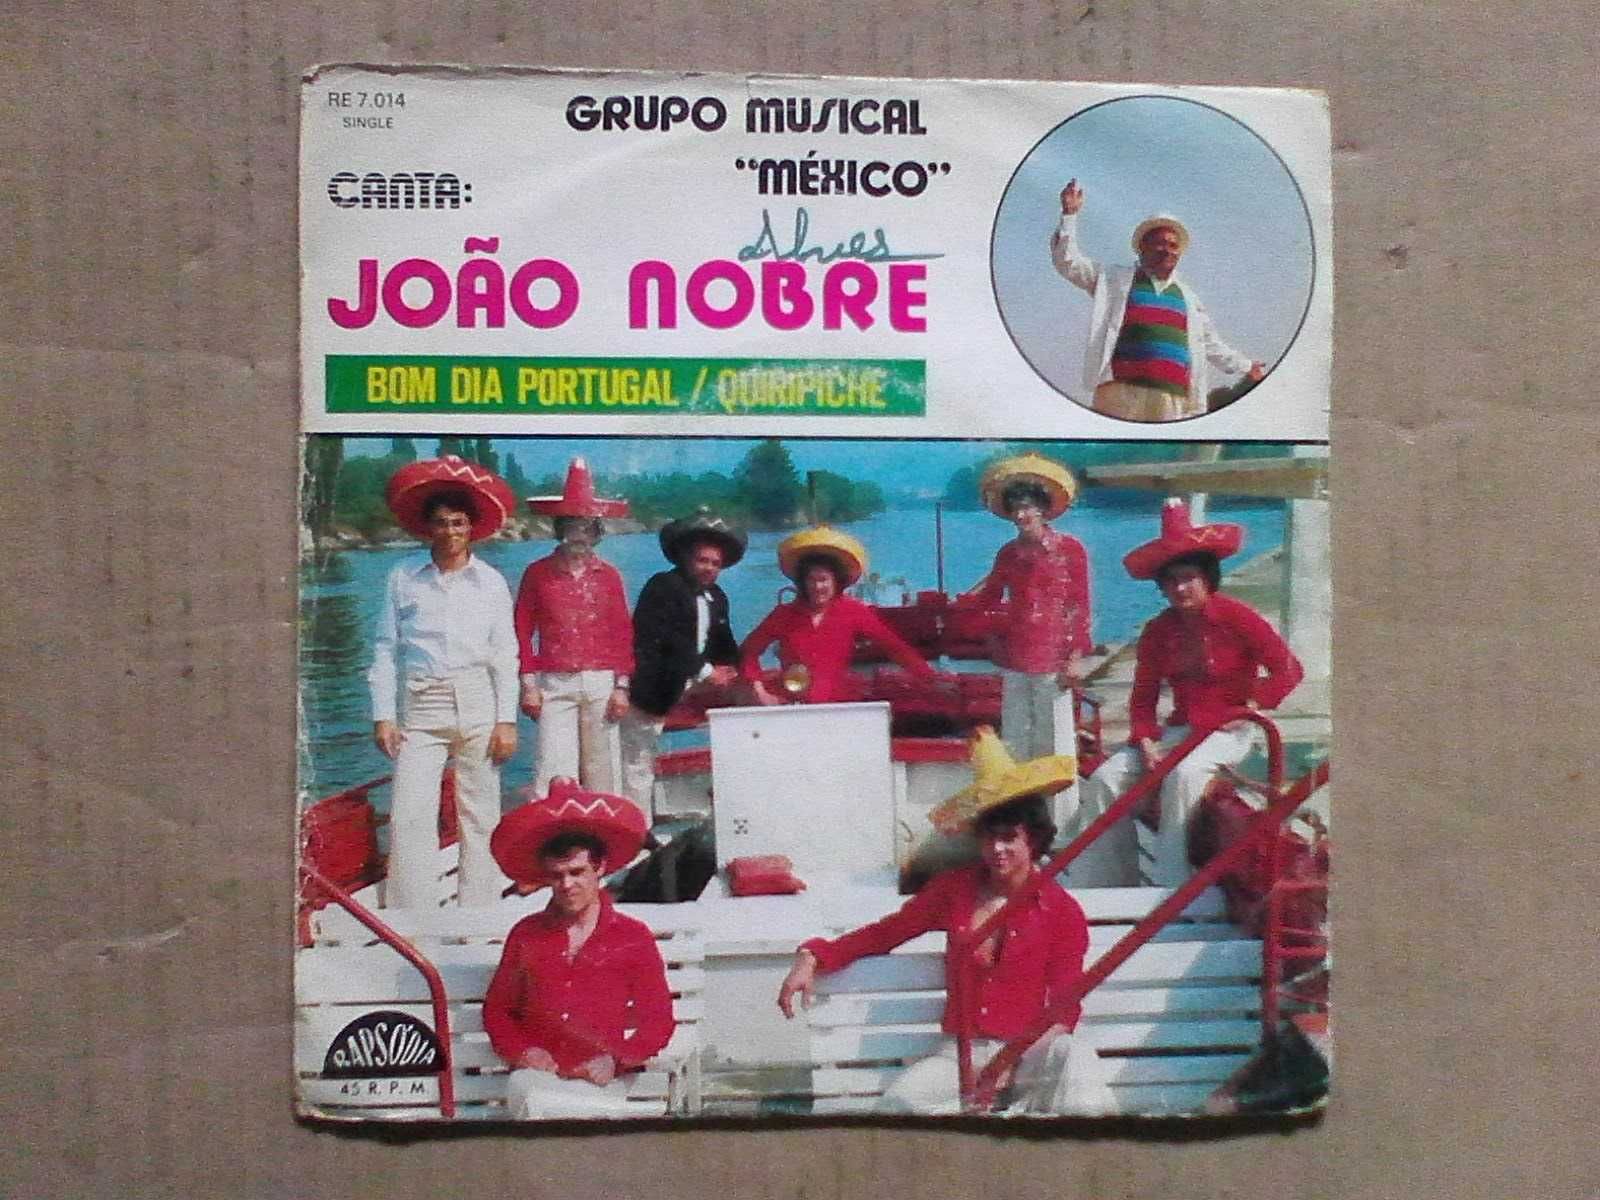 Grupo Musical "México" Canta: João Nobre – Bom Dia Portugal